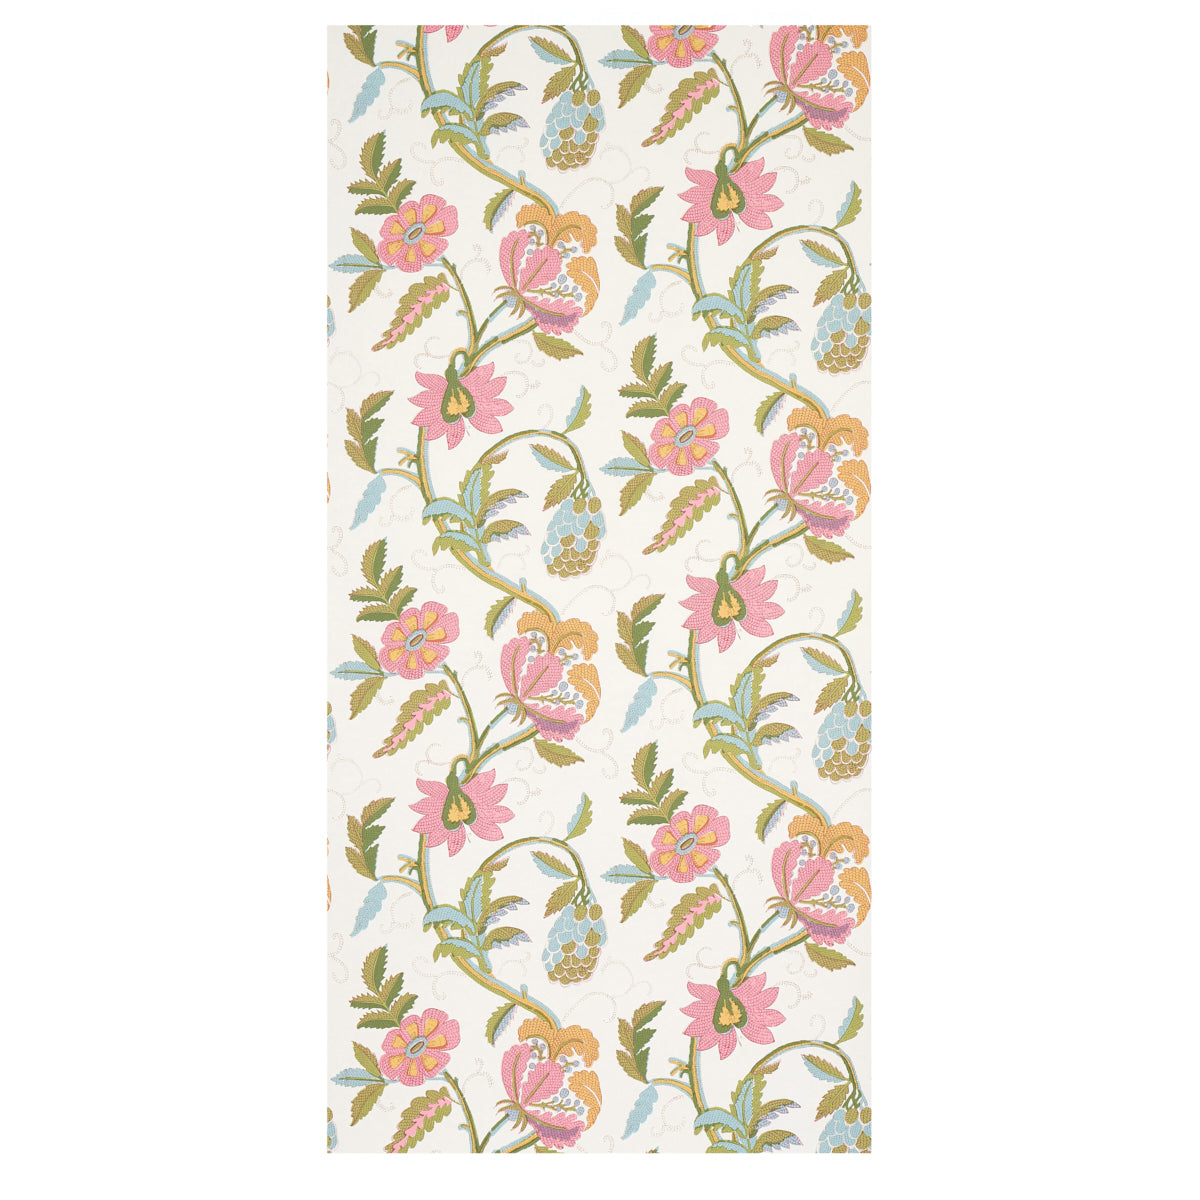 Purchase 5014861 | Indali, Pink & Leaf - Schumacher Wallpaper